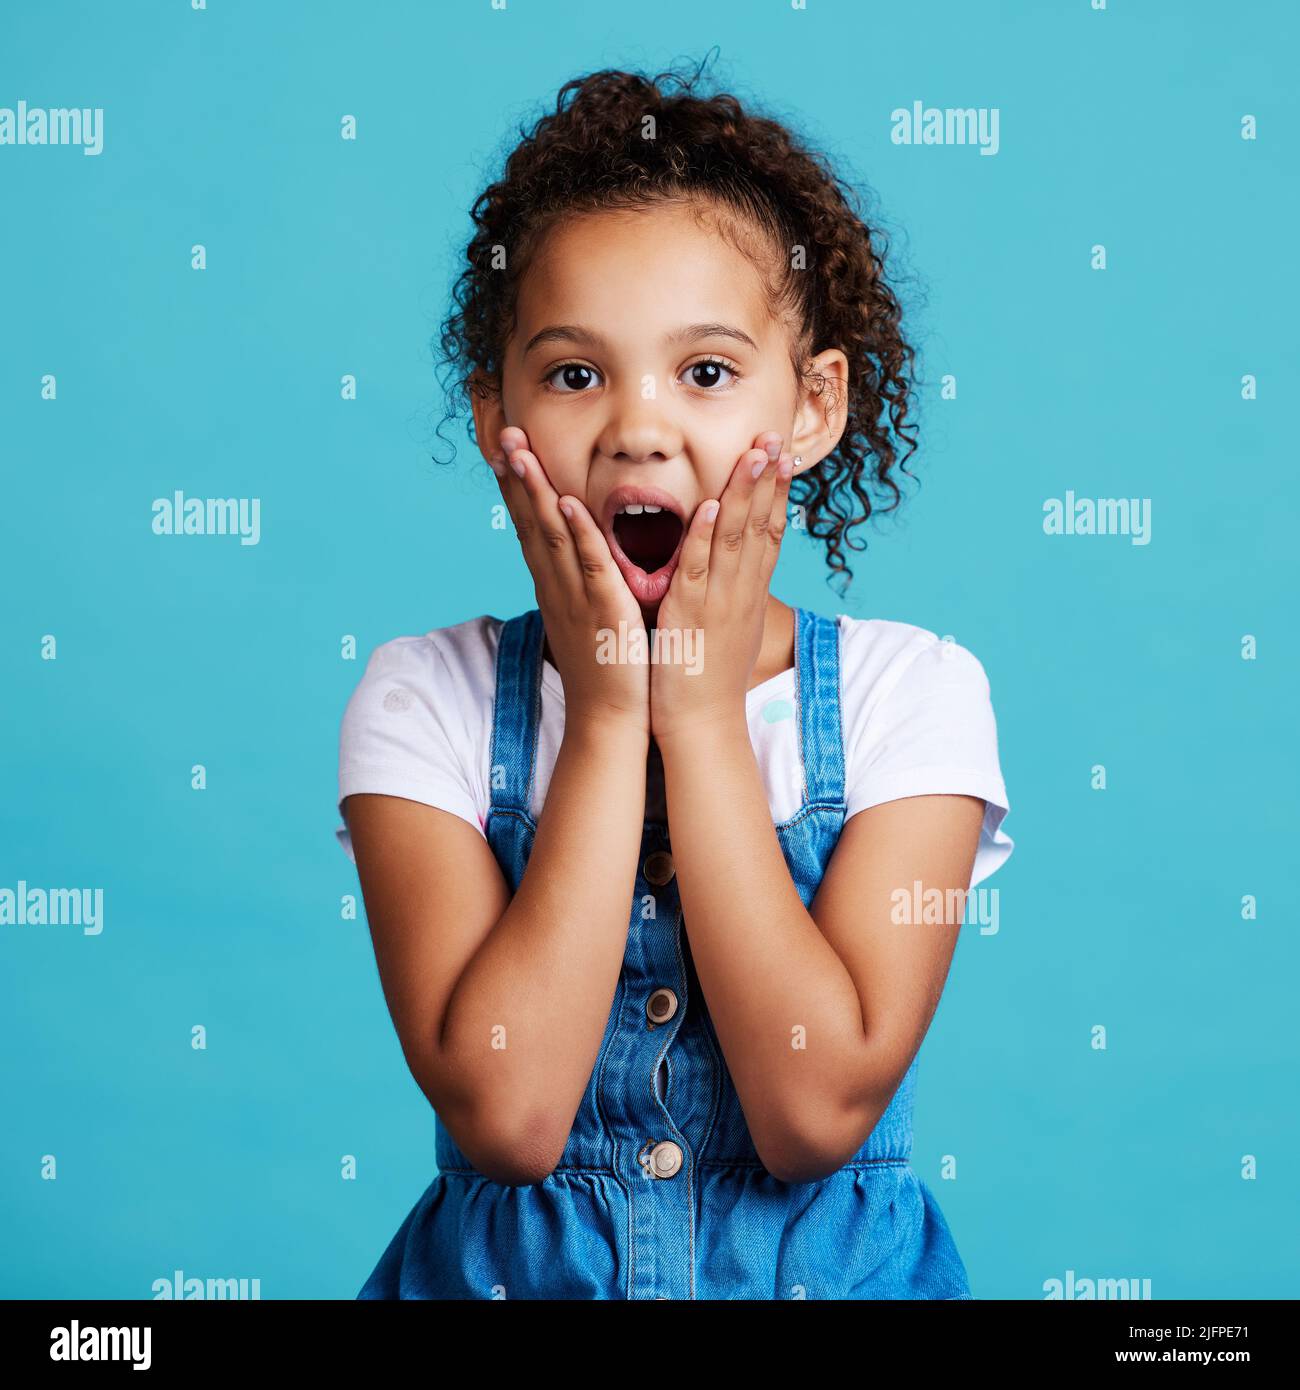 Das habe ich nicht erwartet. Aufnahme eines kleinen Mädchens, das überrascht vor blauem Hintergrund posiert. Stockfoto